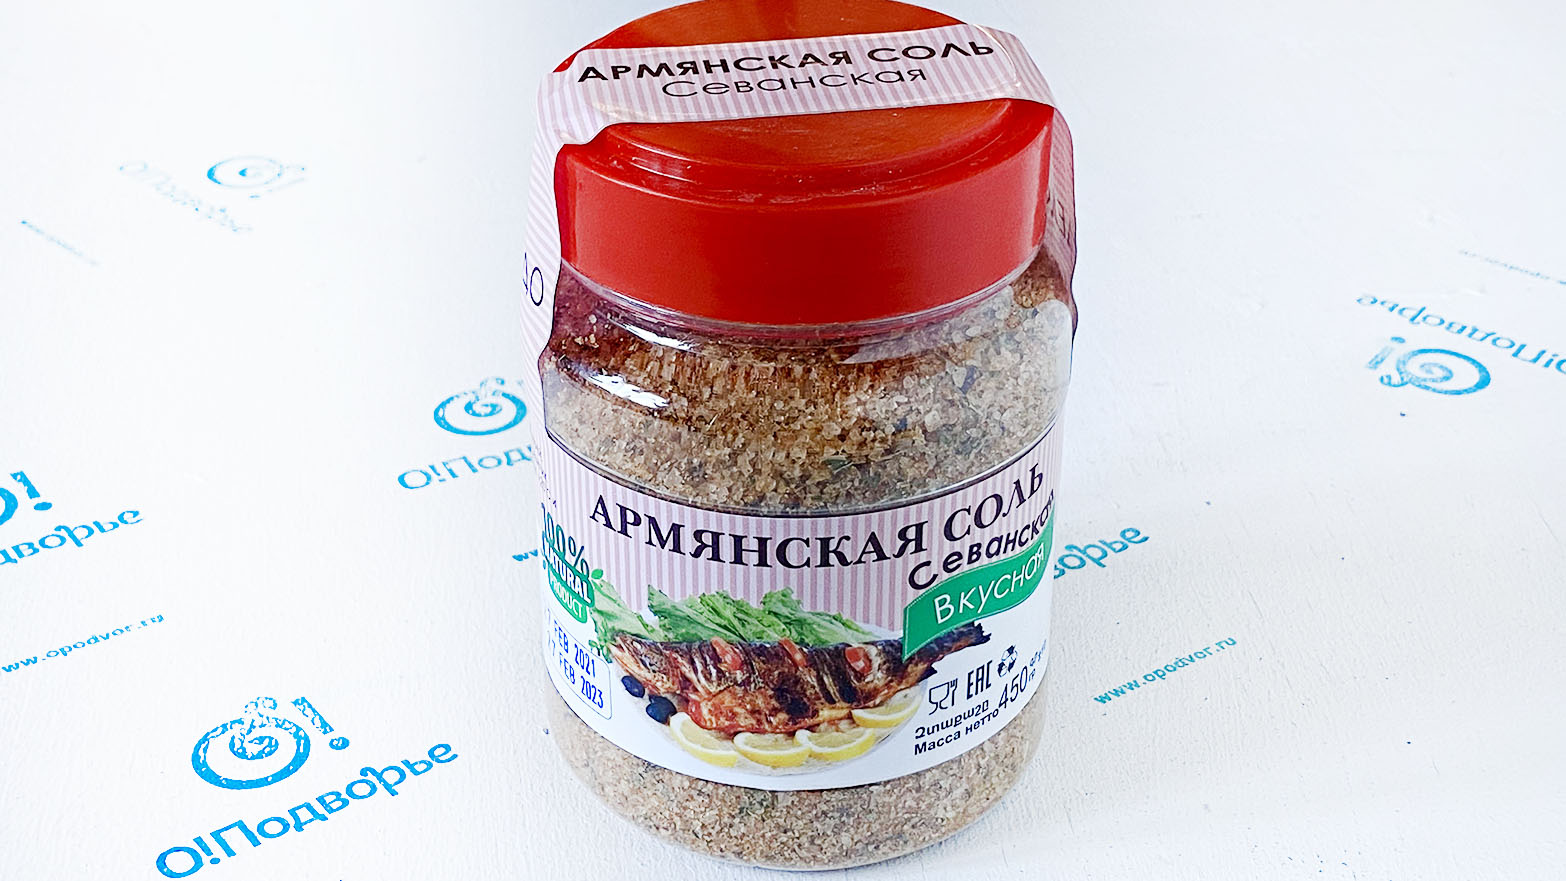 Армянская соль "Севанская" 450 грамм Дары Армении